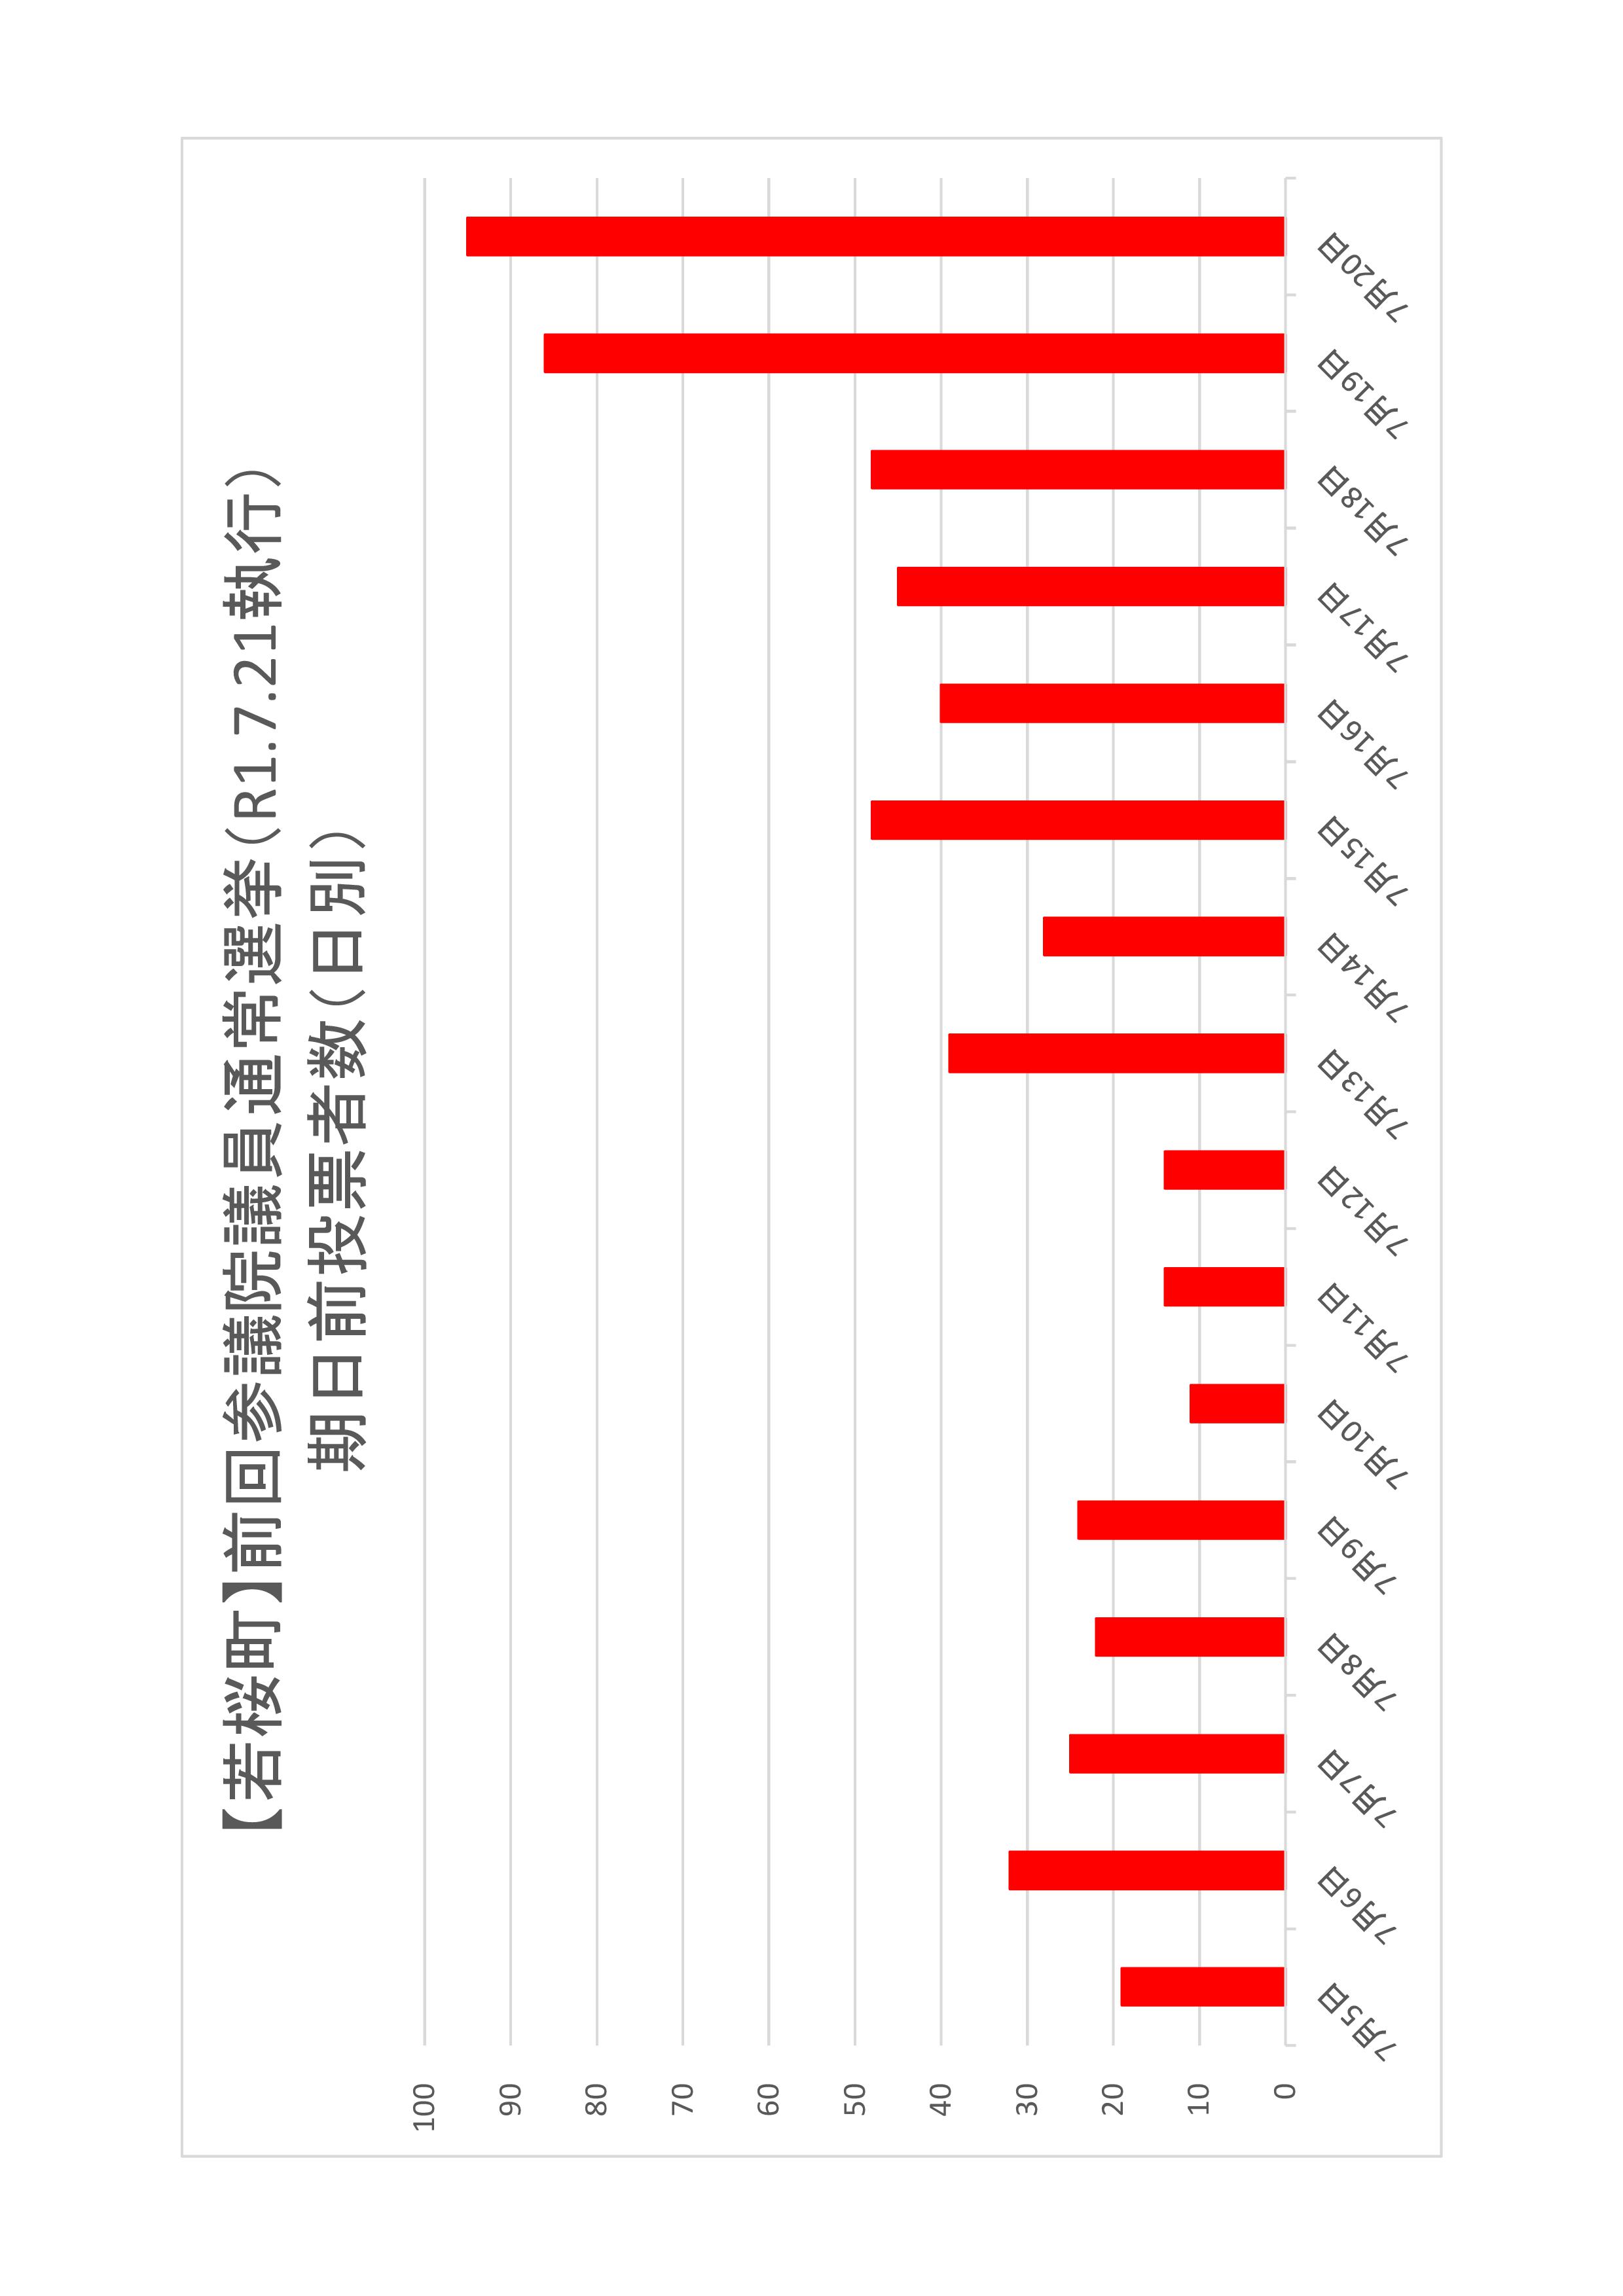 若桜町の日別期日前投票者数のグラフ